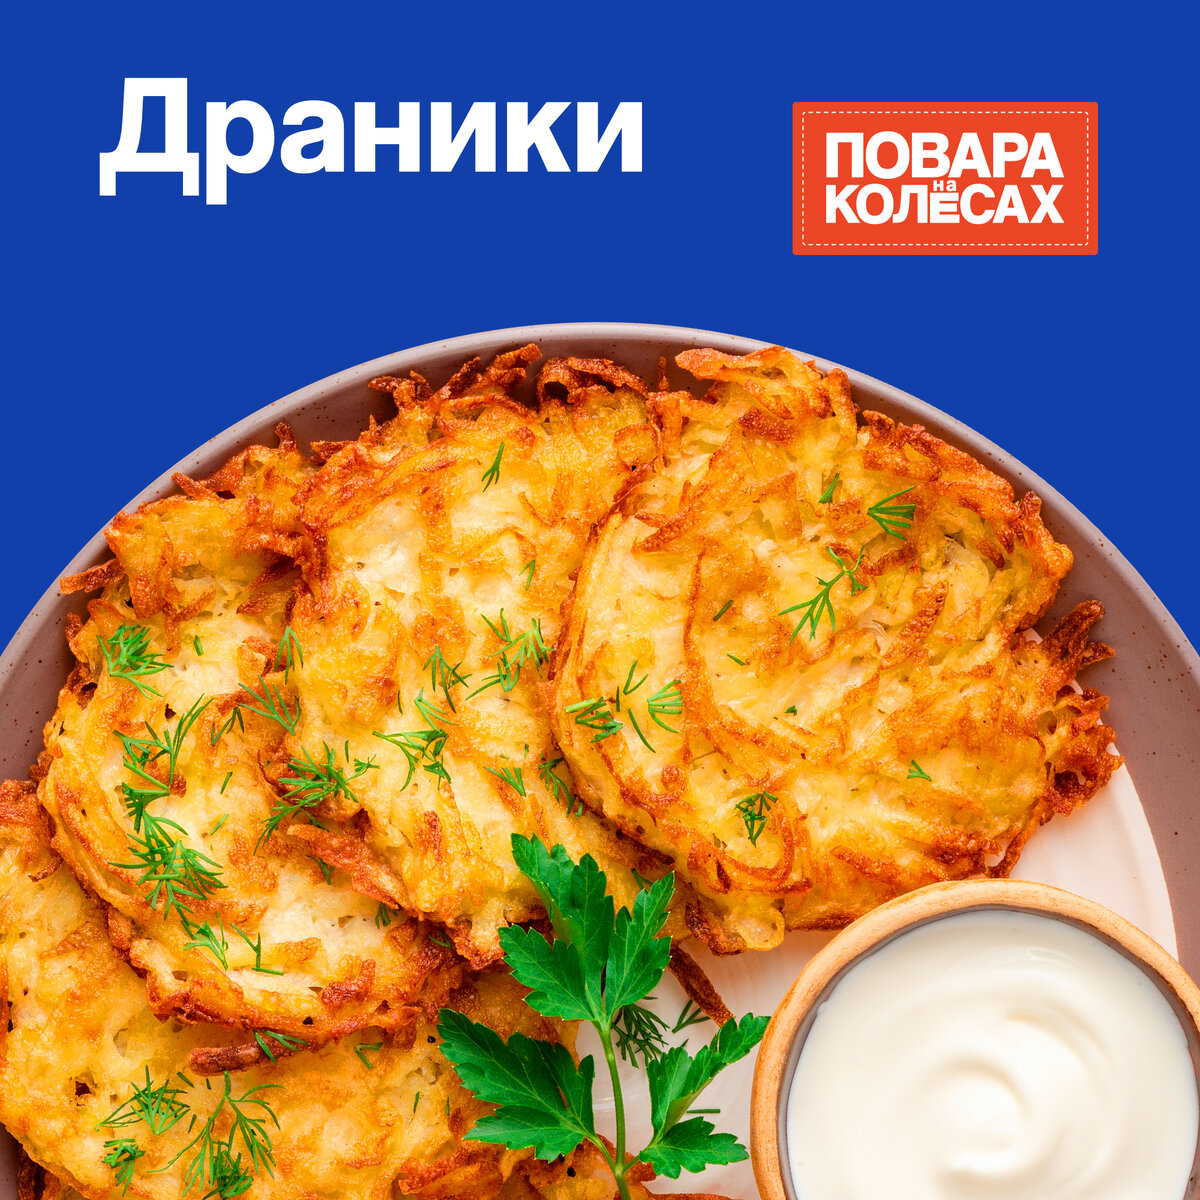 🥔 Драники Одно из самых известных блюд белорусской кухни. Хрустящие картофельные драники обладают уникальным вкусом. Обычно их подают со сметаной и зеленью.-2